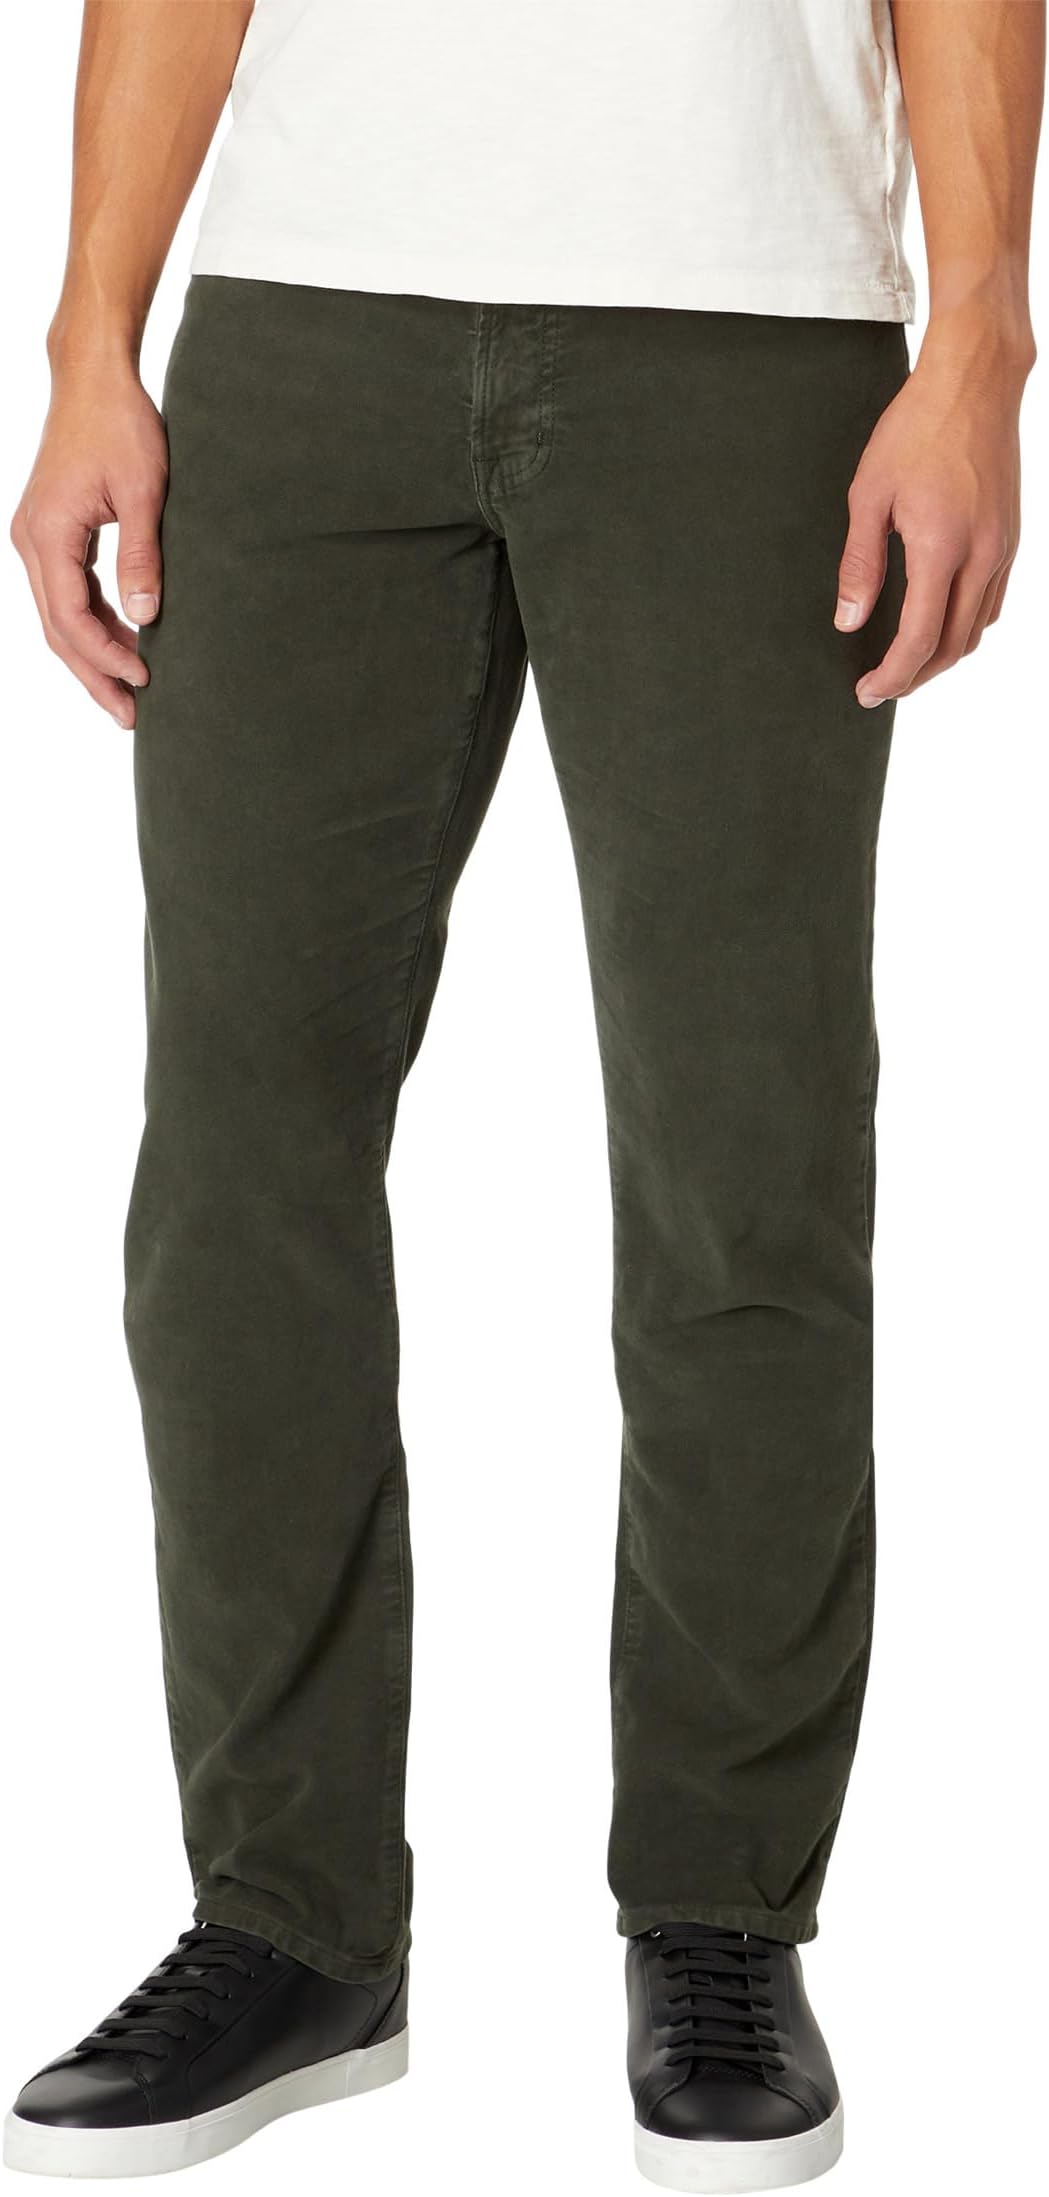 Узкие брюки прямого кроя Everett AG Jeans, цвет Sulfur Dusky Moss джинсы эластичного прямого кроя everett ag jeans цвет bundled